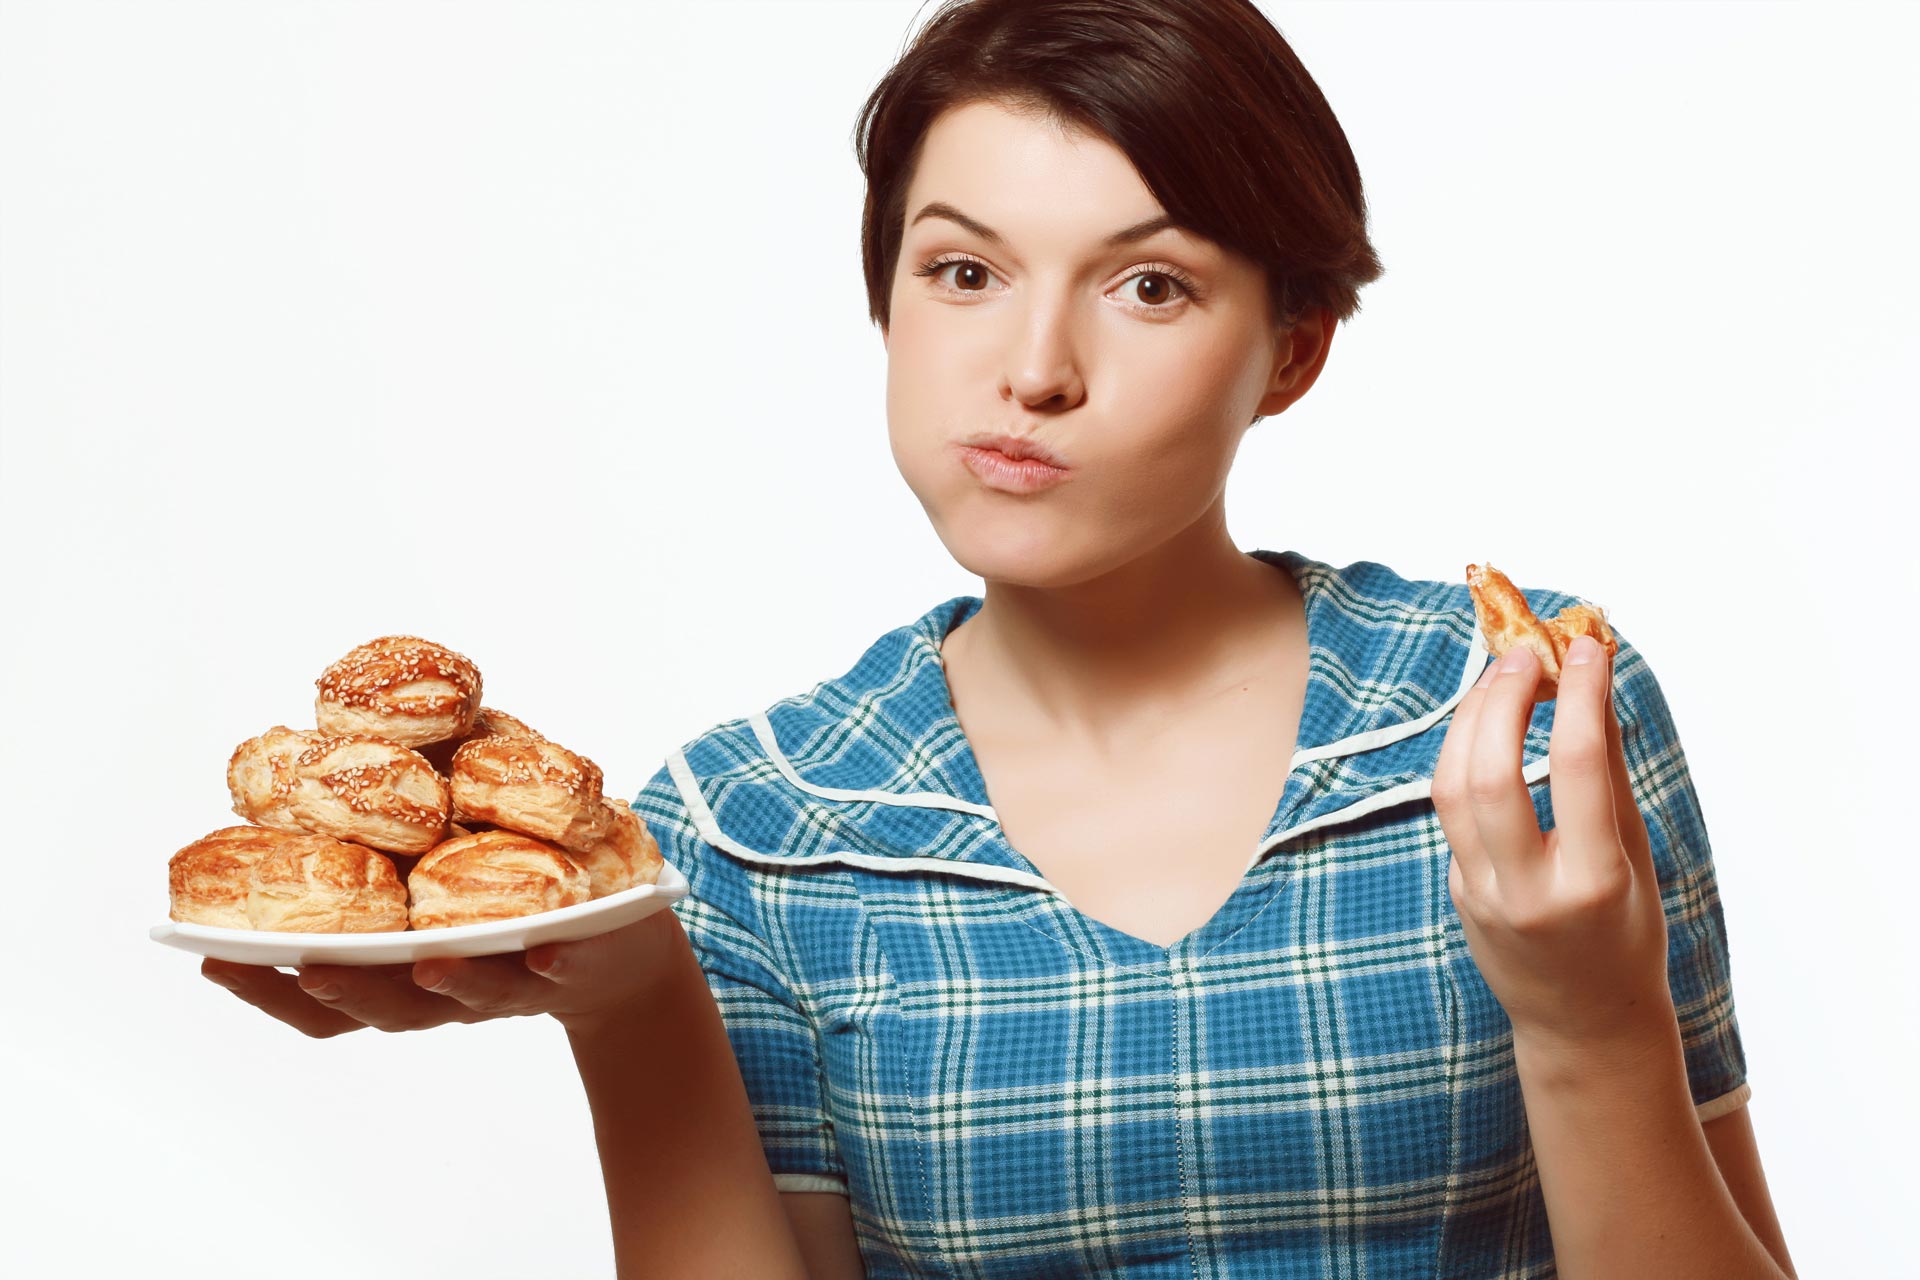 Печеное мамой. Пирожок у девушки. Девушка с пирогом. Женщина с пирожками. Девушка ест пирожок.